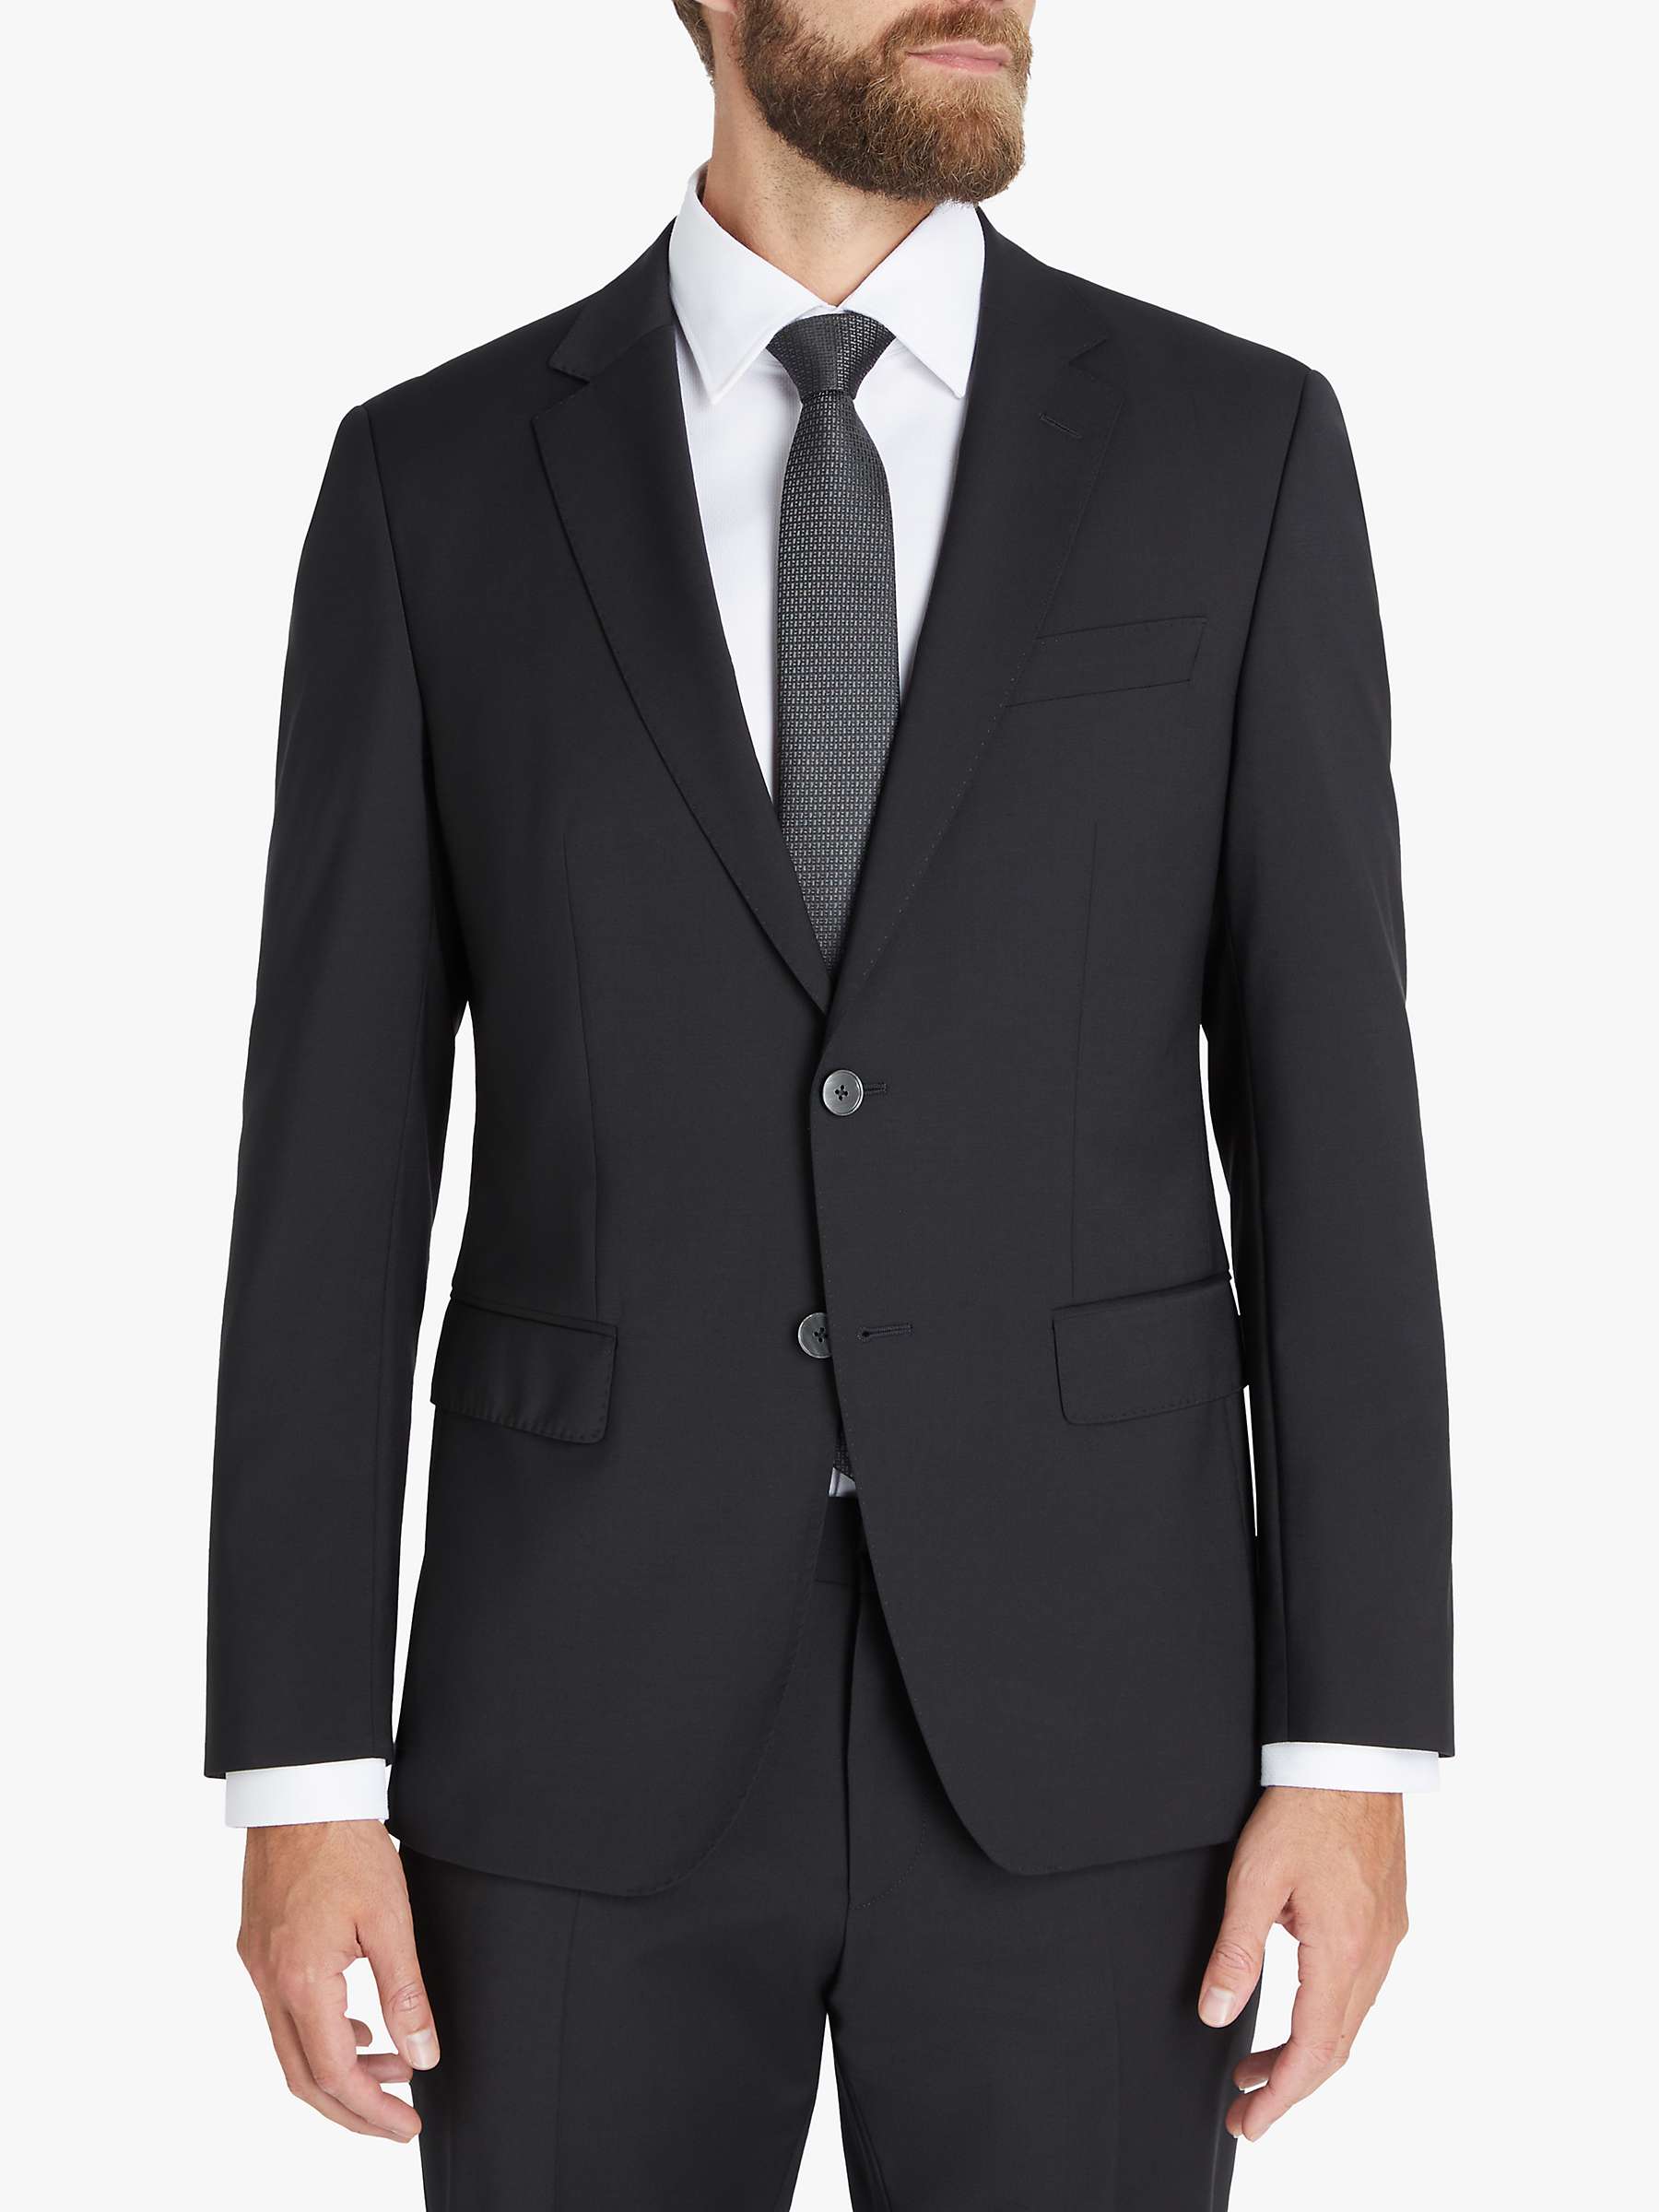 HUGO Huge Virgin Wool Slim Fit Suit Jacket, Black at John Lewis & Partners